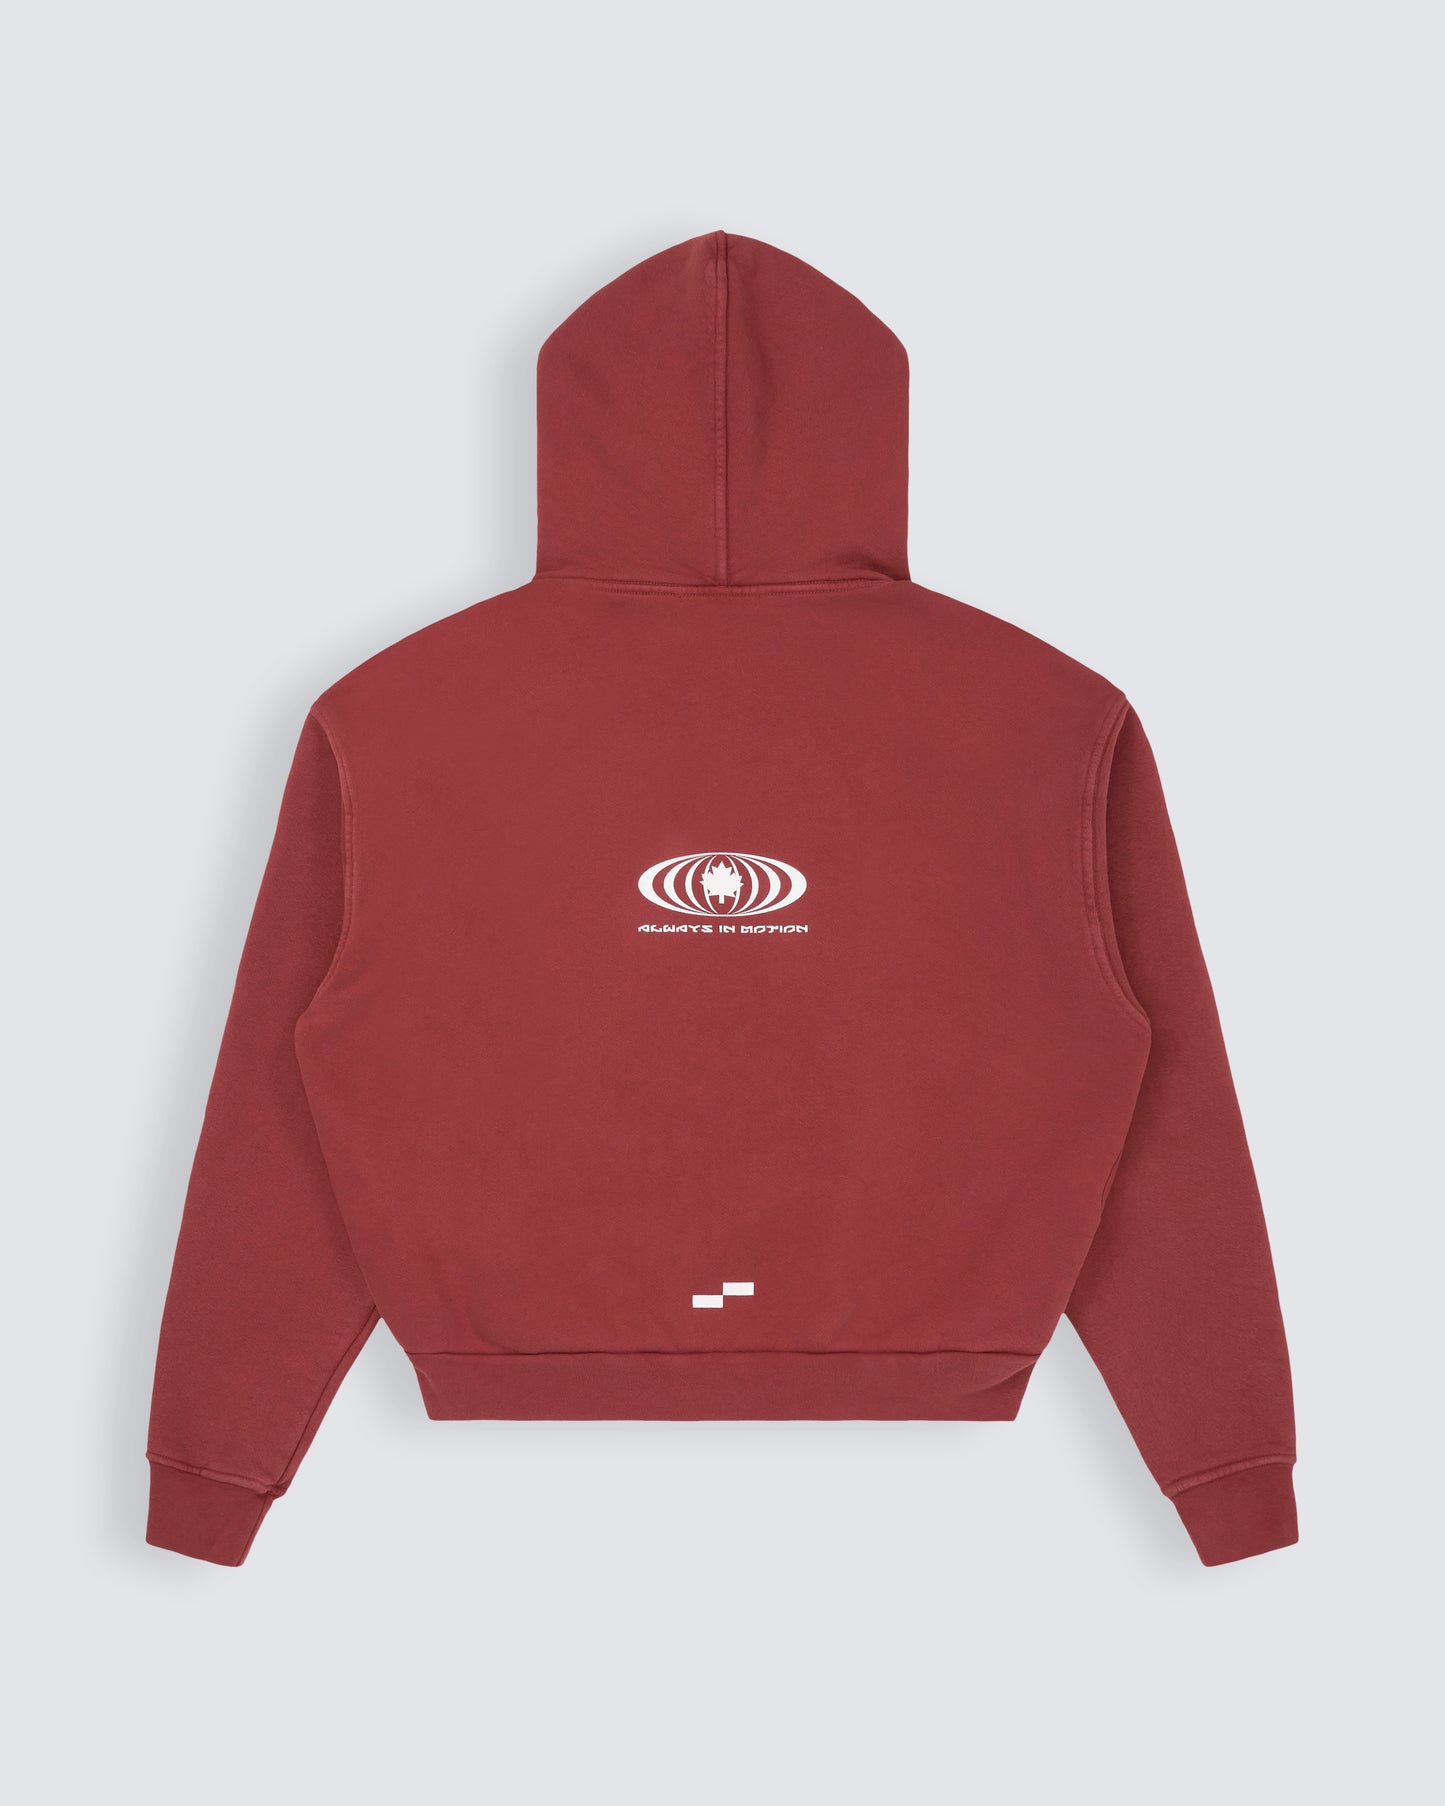 House iD hoodie in mars red